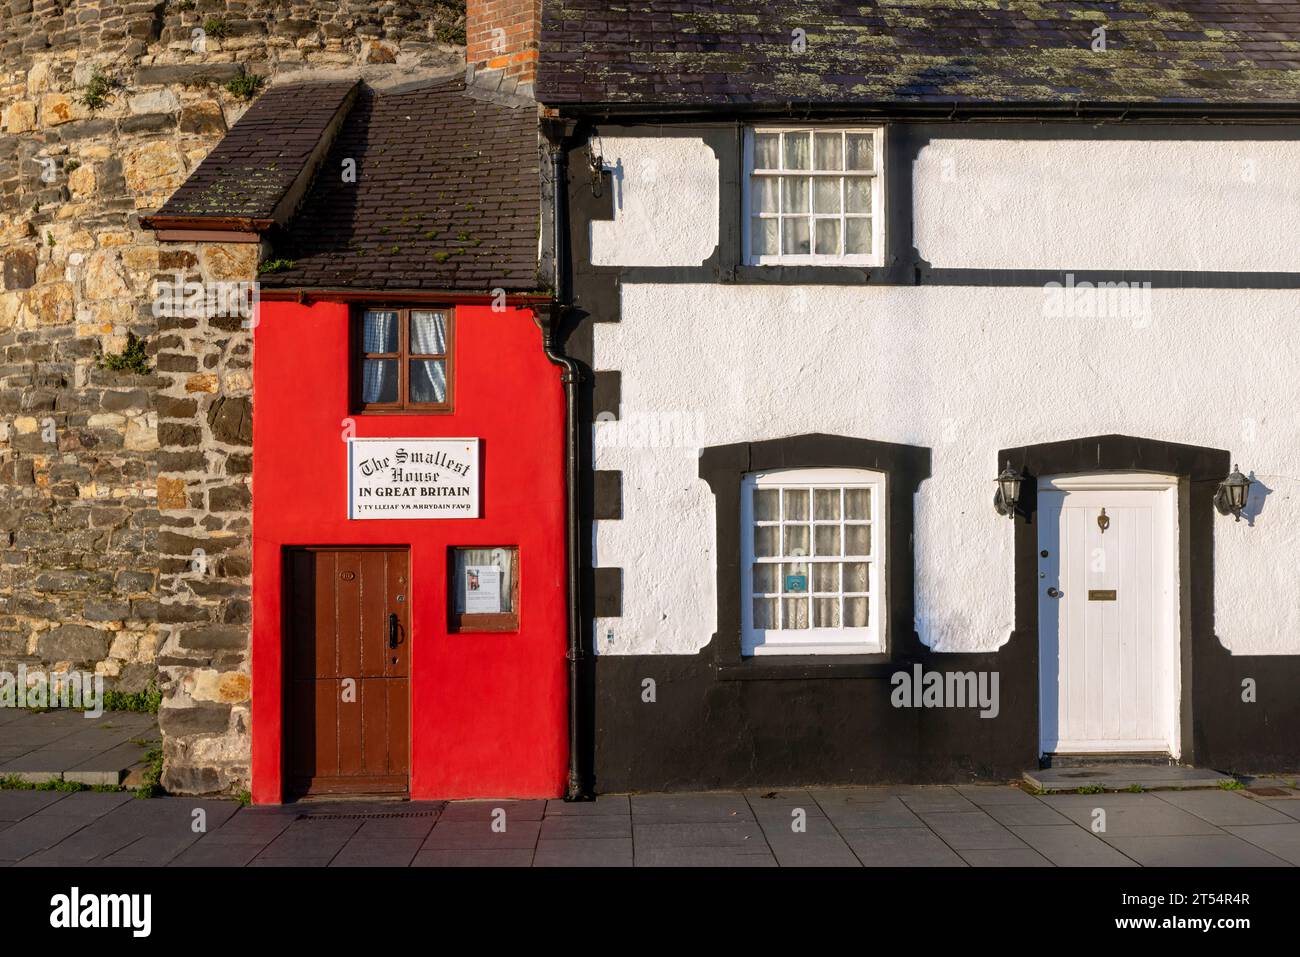 Conwy ist eine historische Stadt in Nordwales mit einer mittelalterlichen Burg und dem kleinsten Haus Großbritanniens. Stockfoto